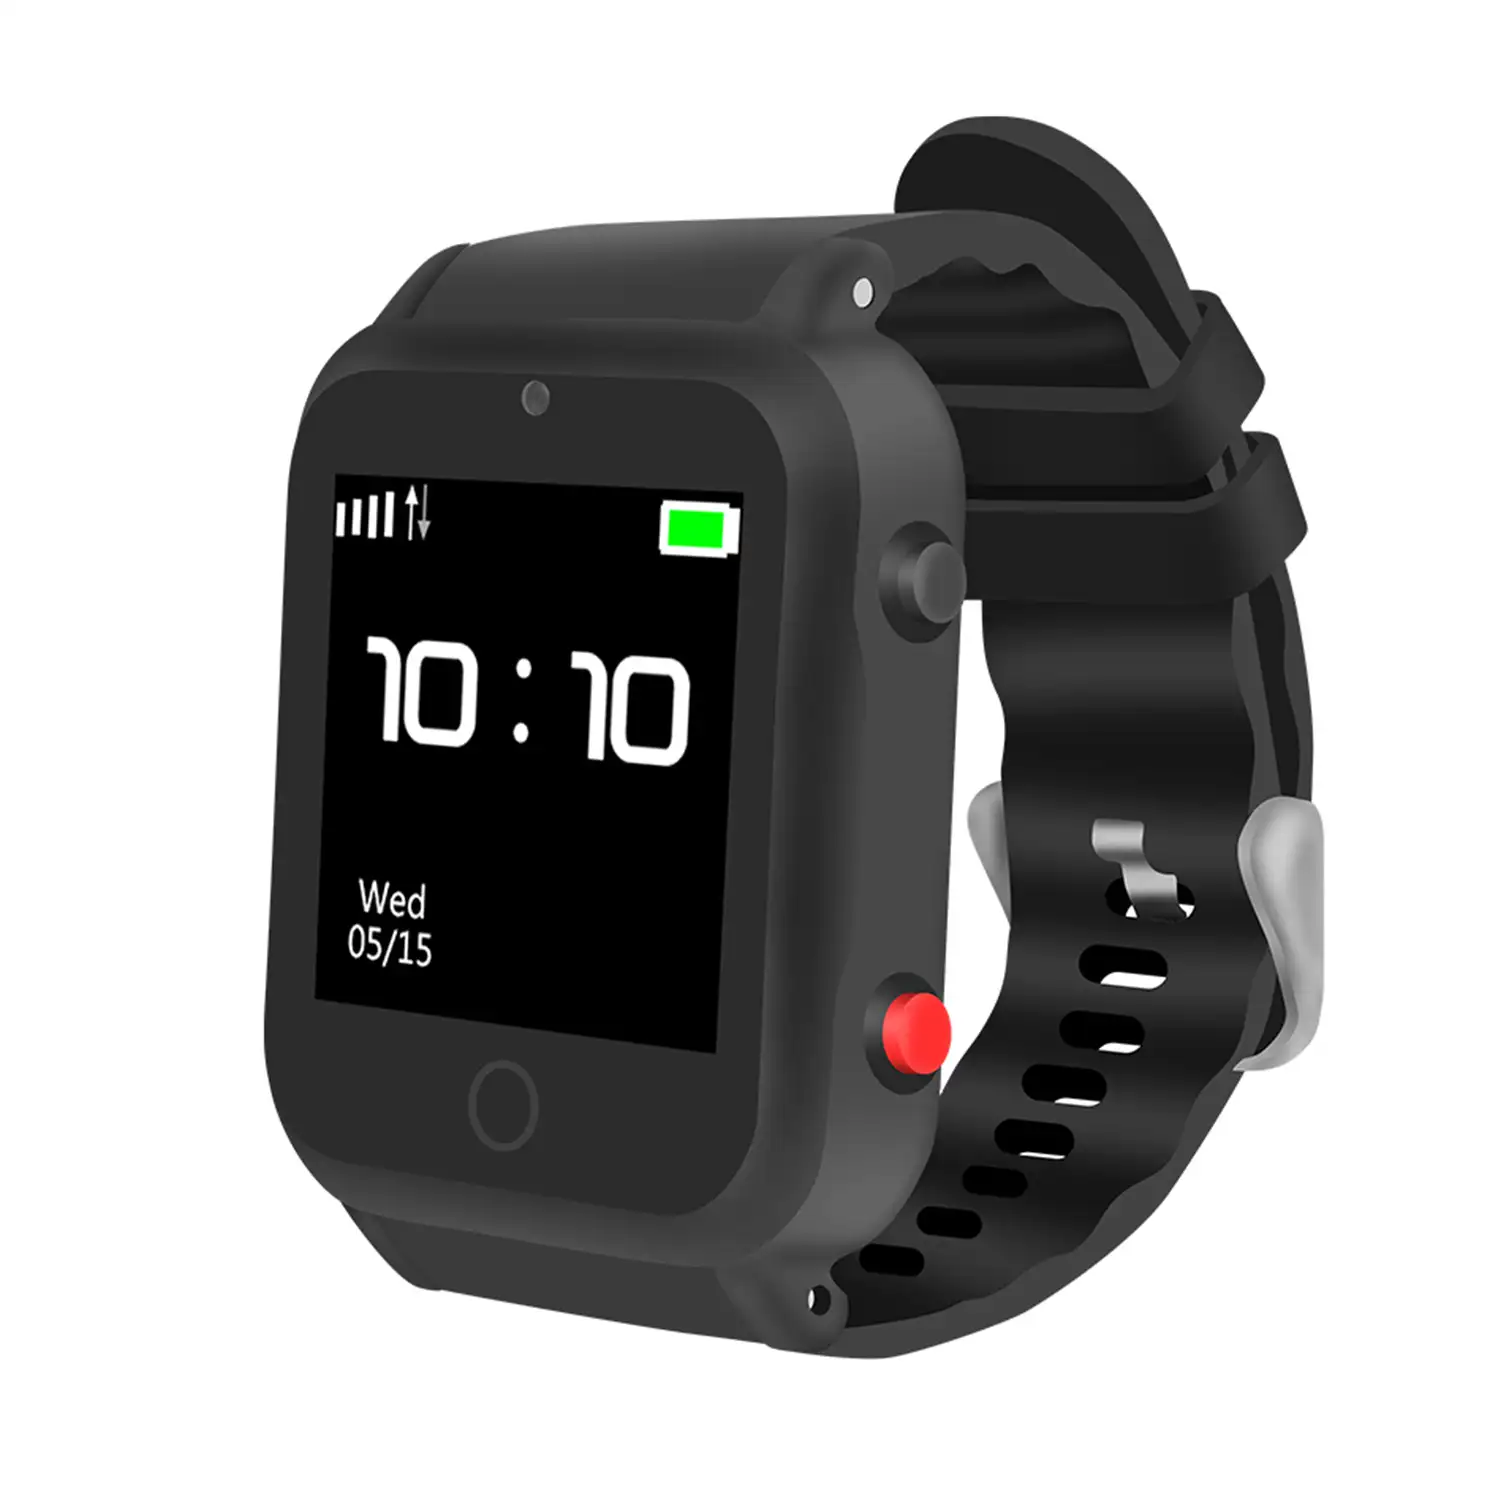 Smartwatch S88 localizador GPS, AGPS y LBS. Especial personas